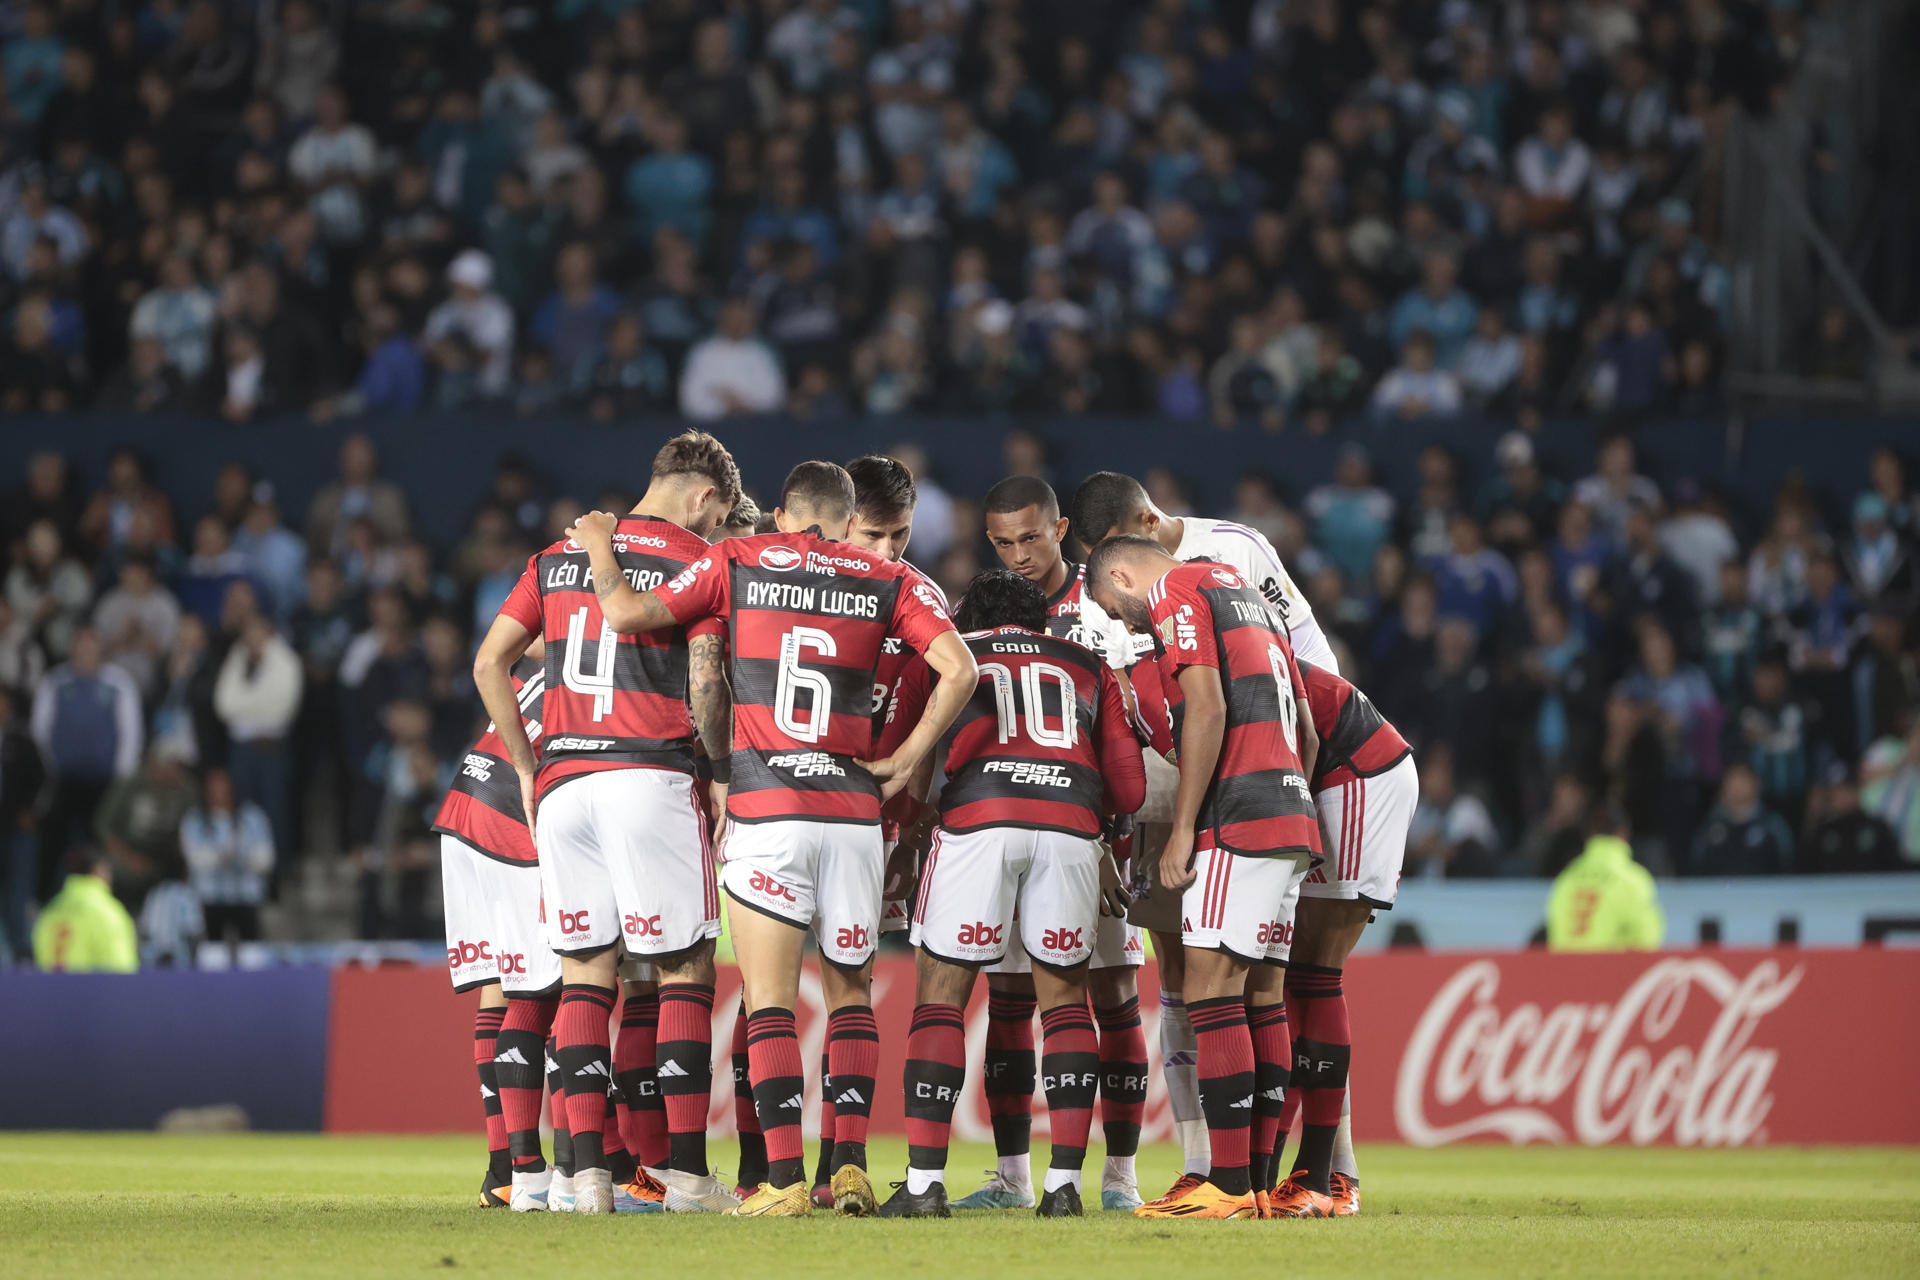 Jugadores de Flamengo durante un partido de la fase de grupos de la Copa Libertadores, en una fotografía de archivo. EFE/Juan Ignacio Roncoroni